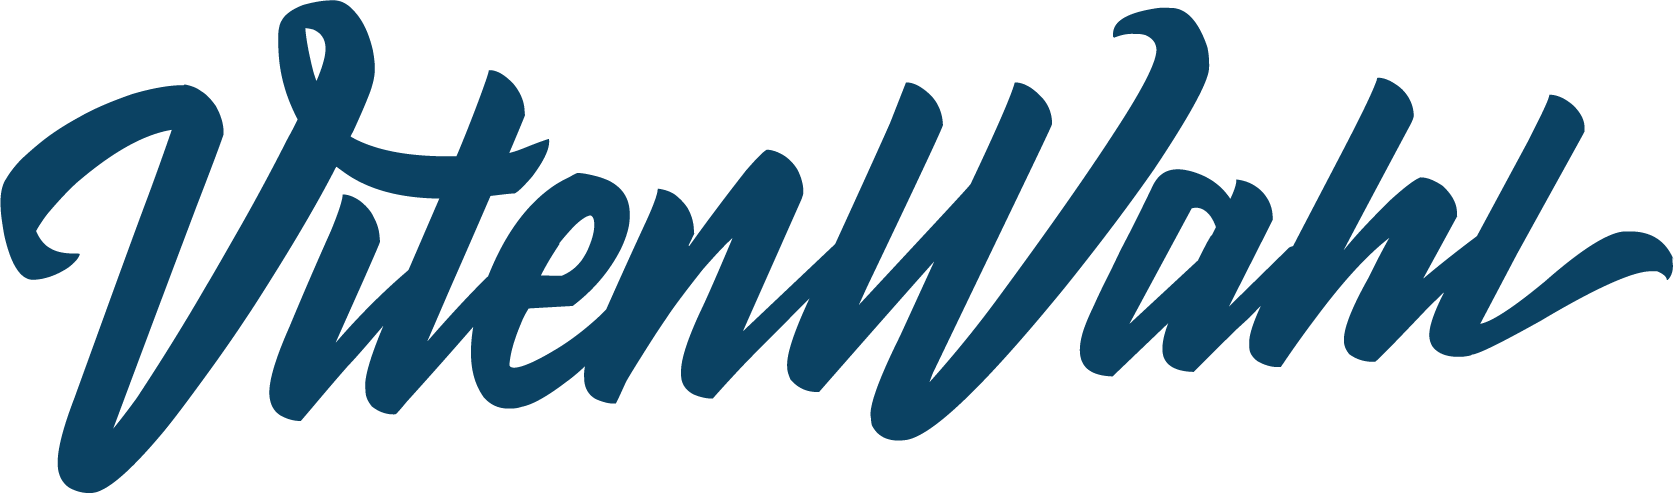 VitenWahl logo